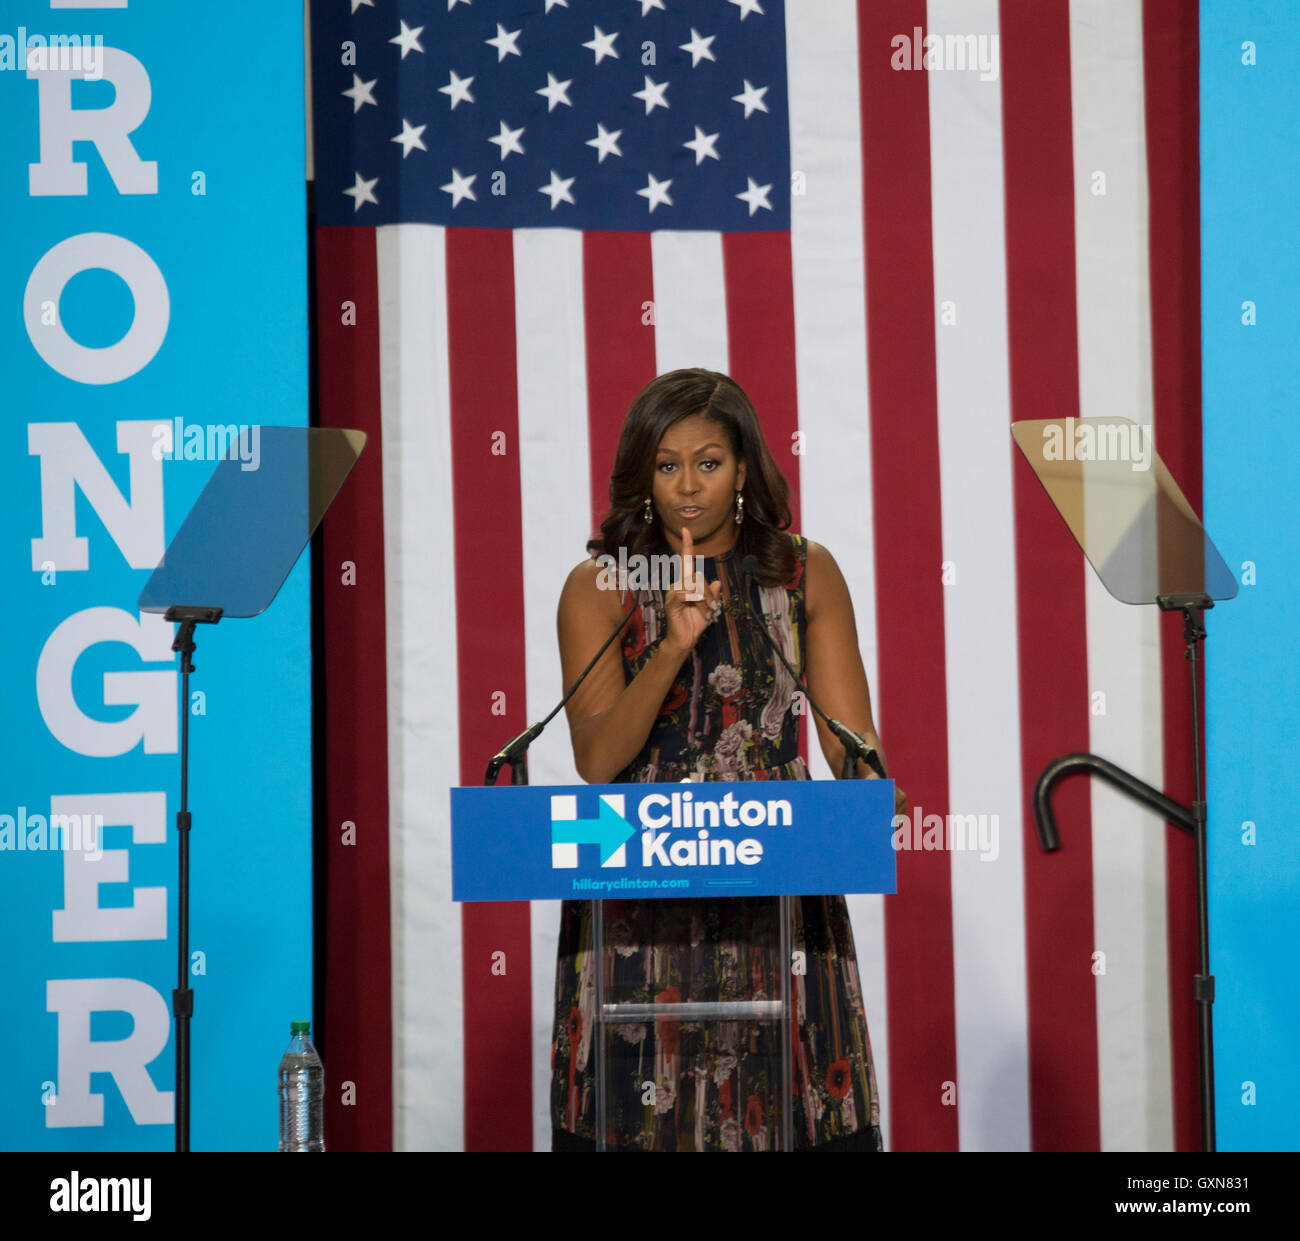 Fairfax, VA 16. September 2016, USA: First Lady Michelle Obama erscheint bei einer Kundgebung auf dem Campus der George Mason University in Fairfax, VA.  Patsy Lynch/MediaPunch Stockfoto